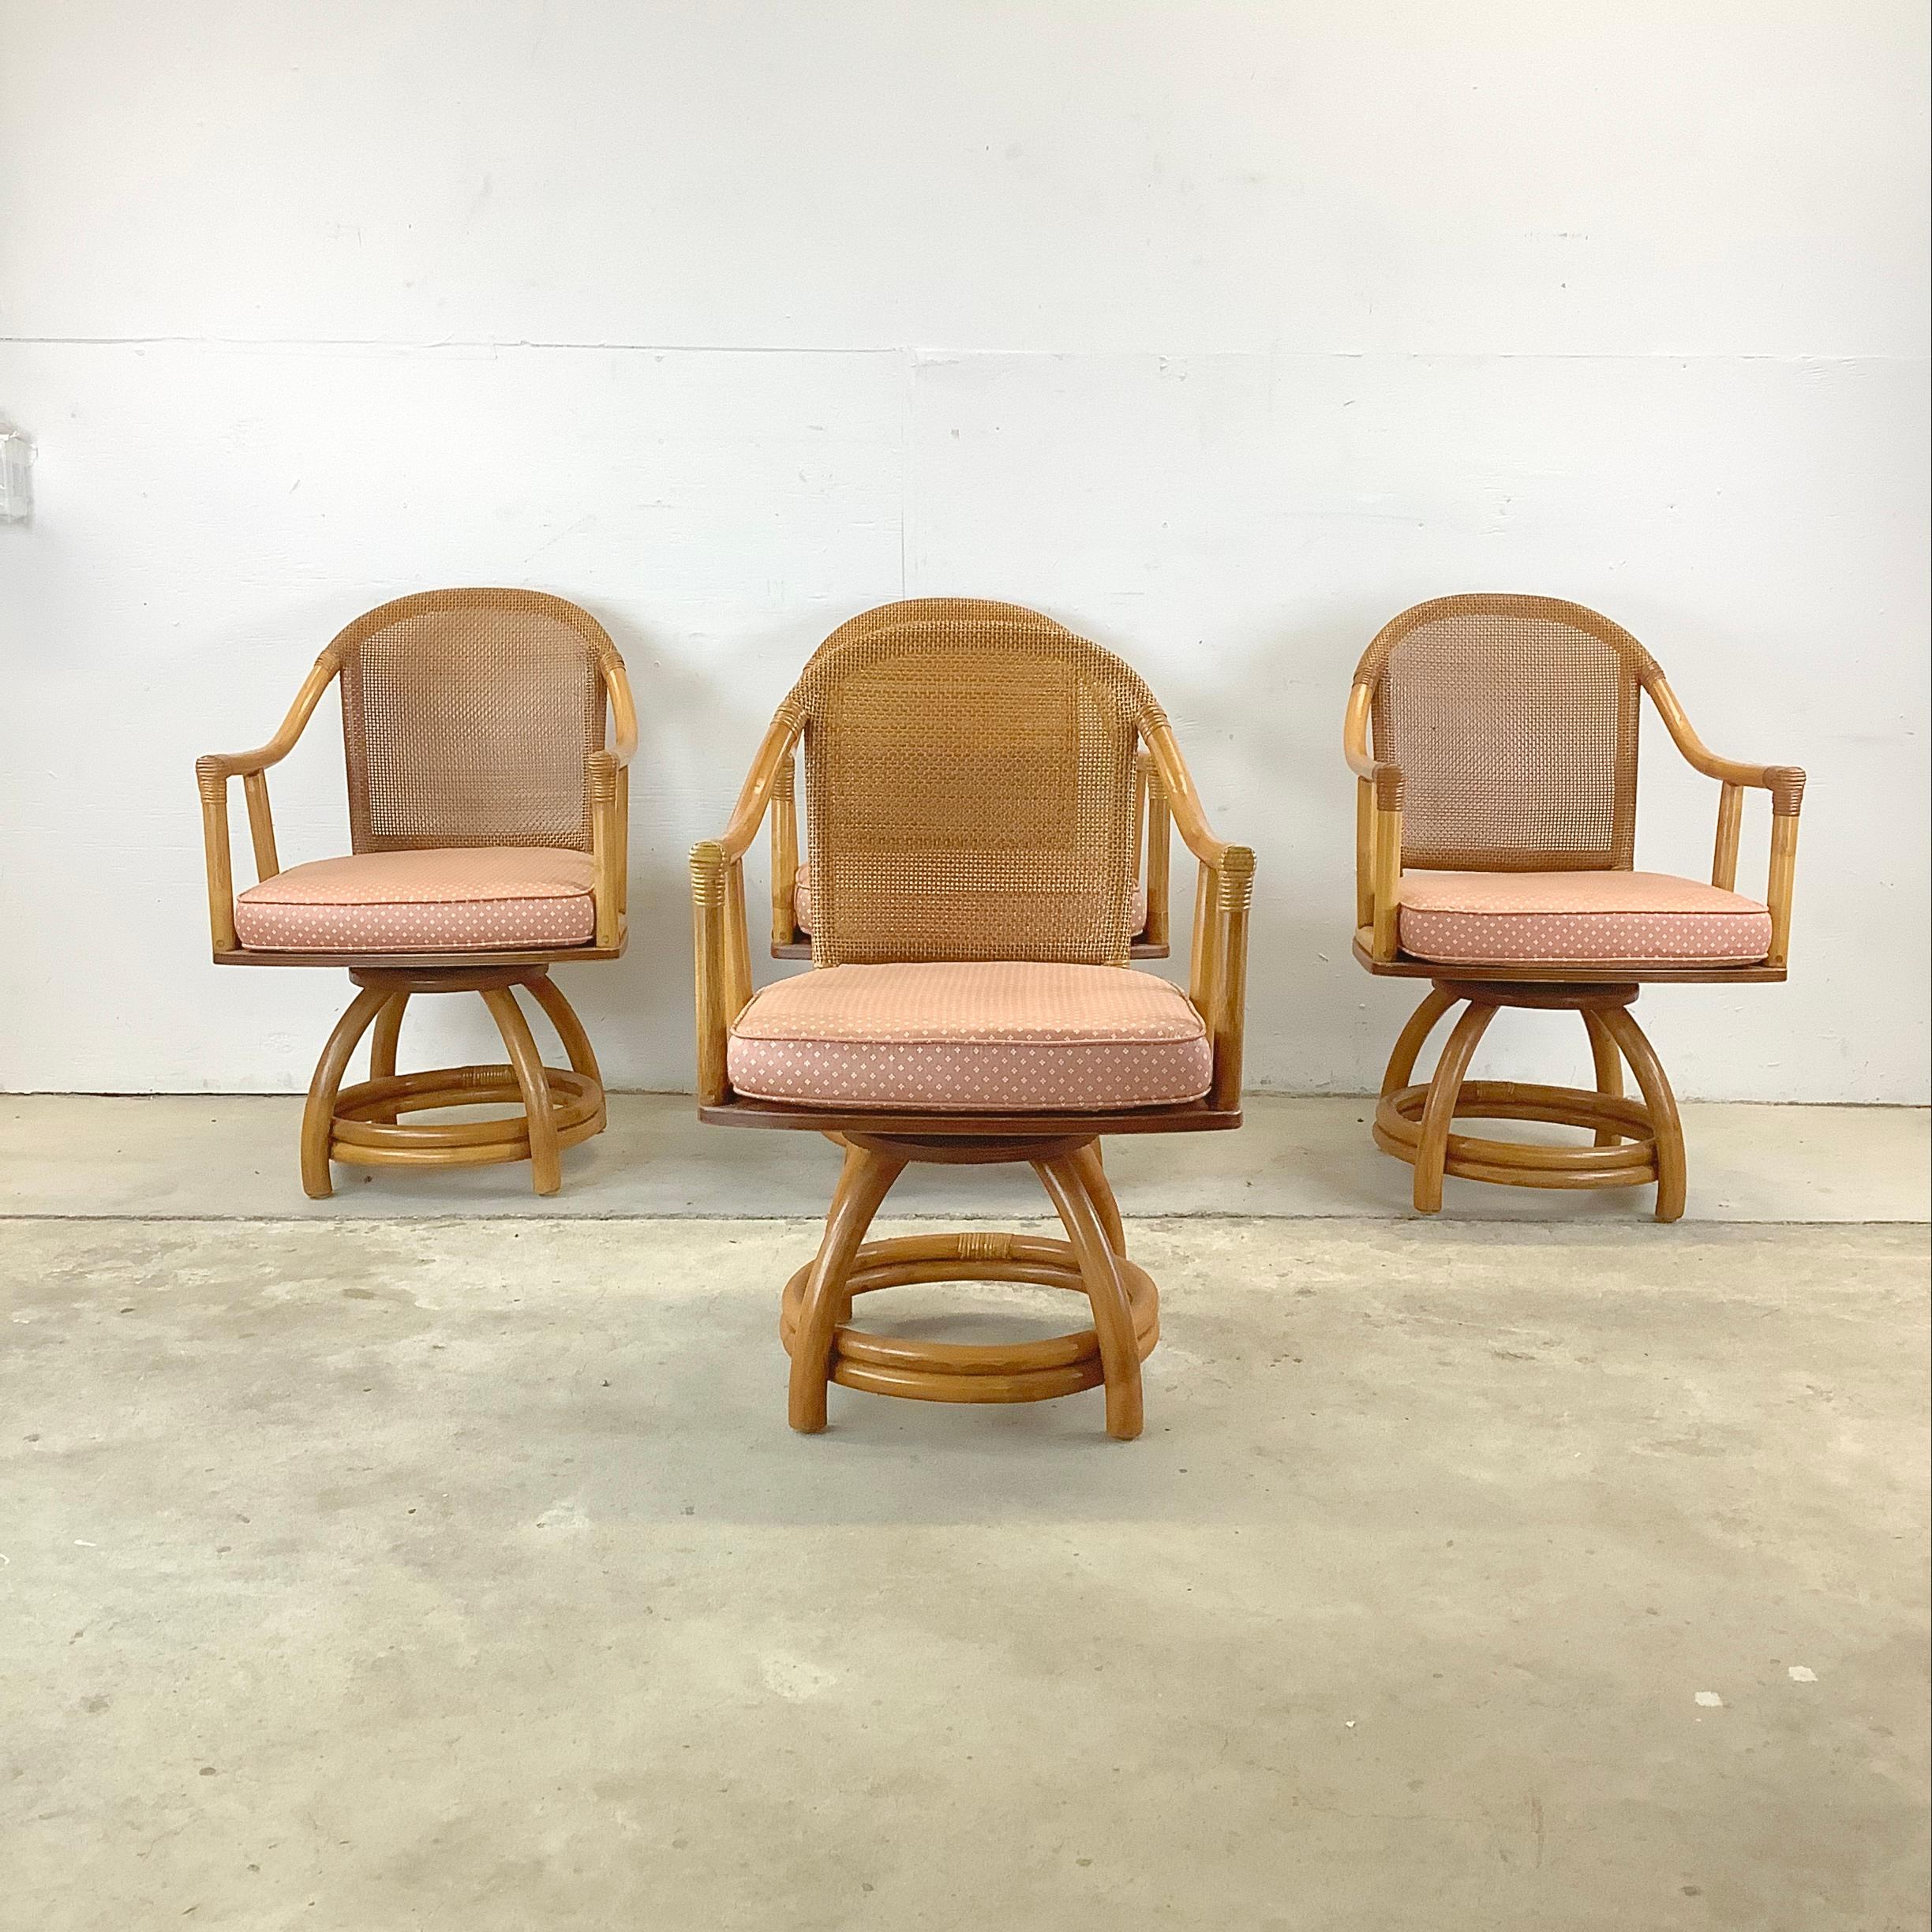 Cet ensemble de quatre fauteuils en rotin du milieu du siècle offre  un charmant mélange de confort, de style et de nostalgie qui apporte une touche d'élégance vintage à votre espace de vie. Fabriqués dans le style iconique d'ADS, ces fauteuils